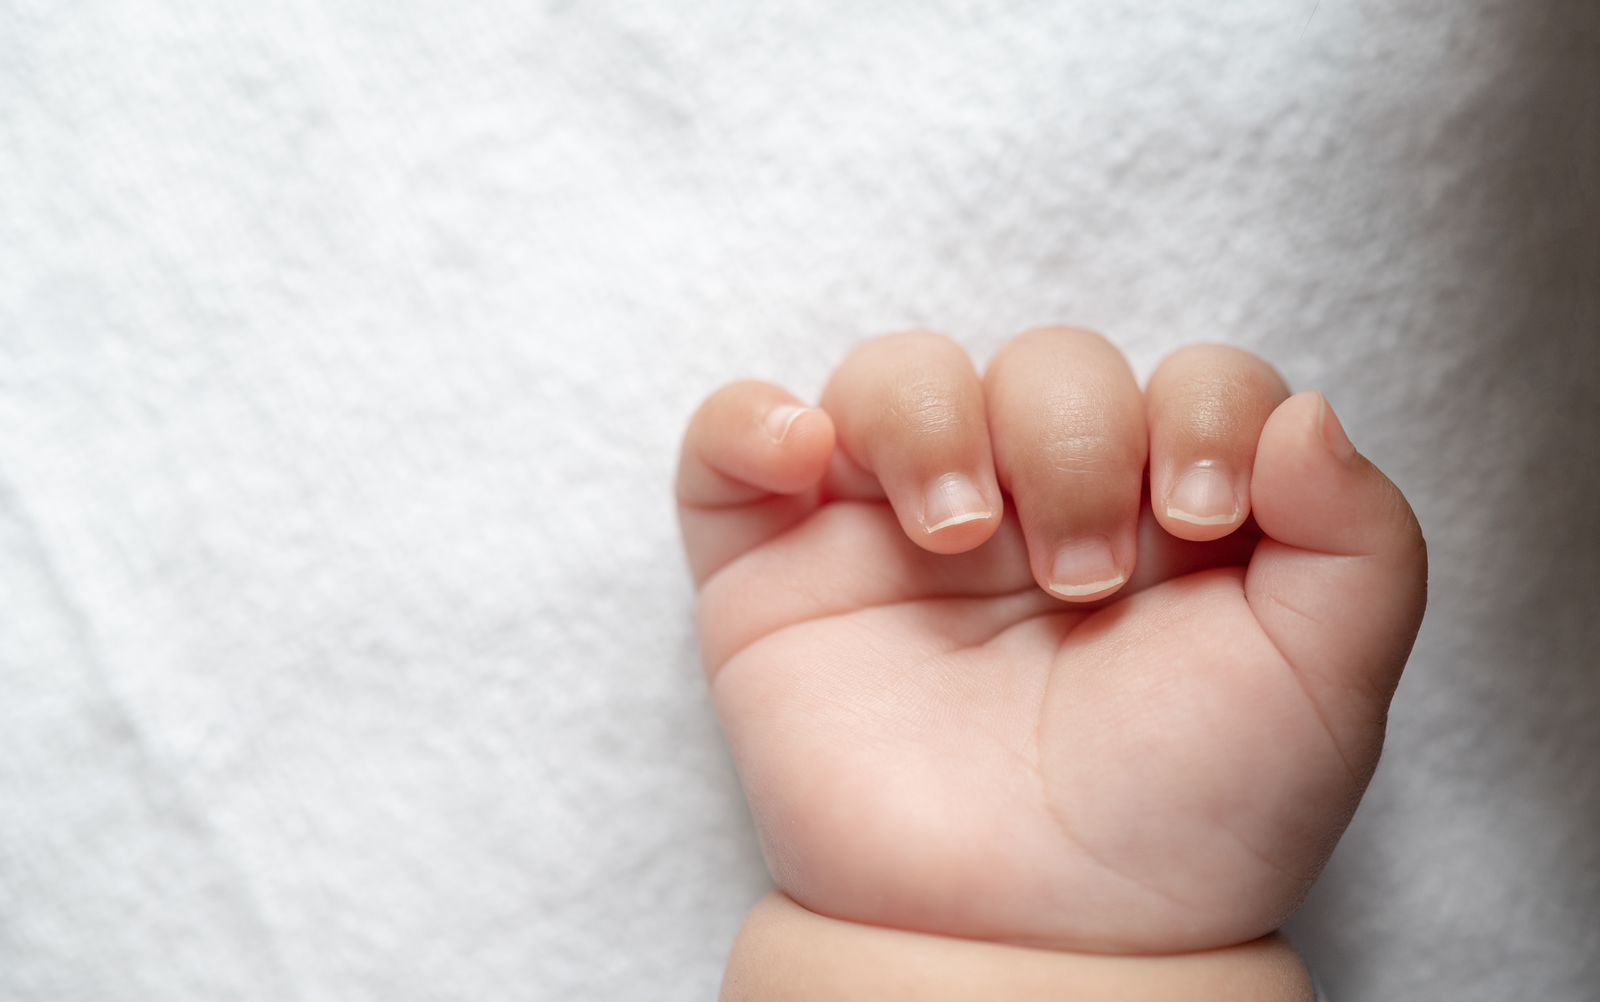 cortar las uñas a un bebé, como y cuando limar uñas recién nacido trucos